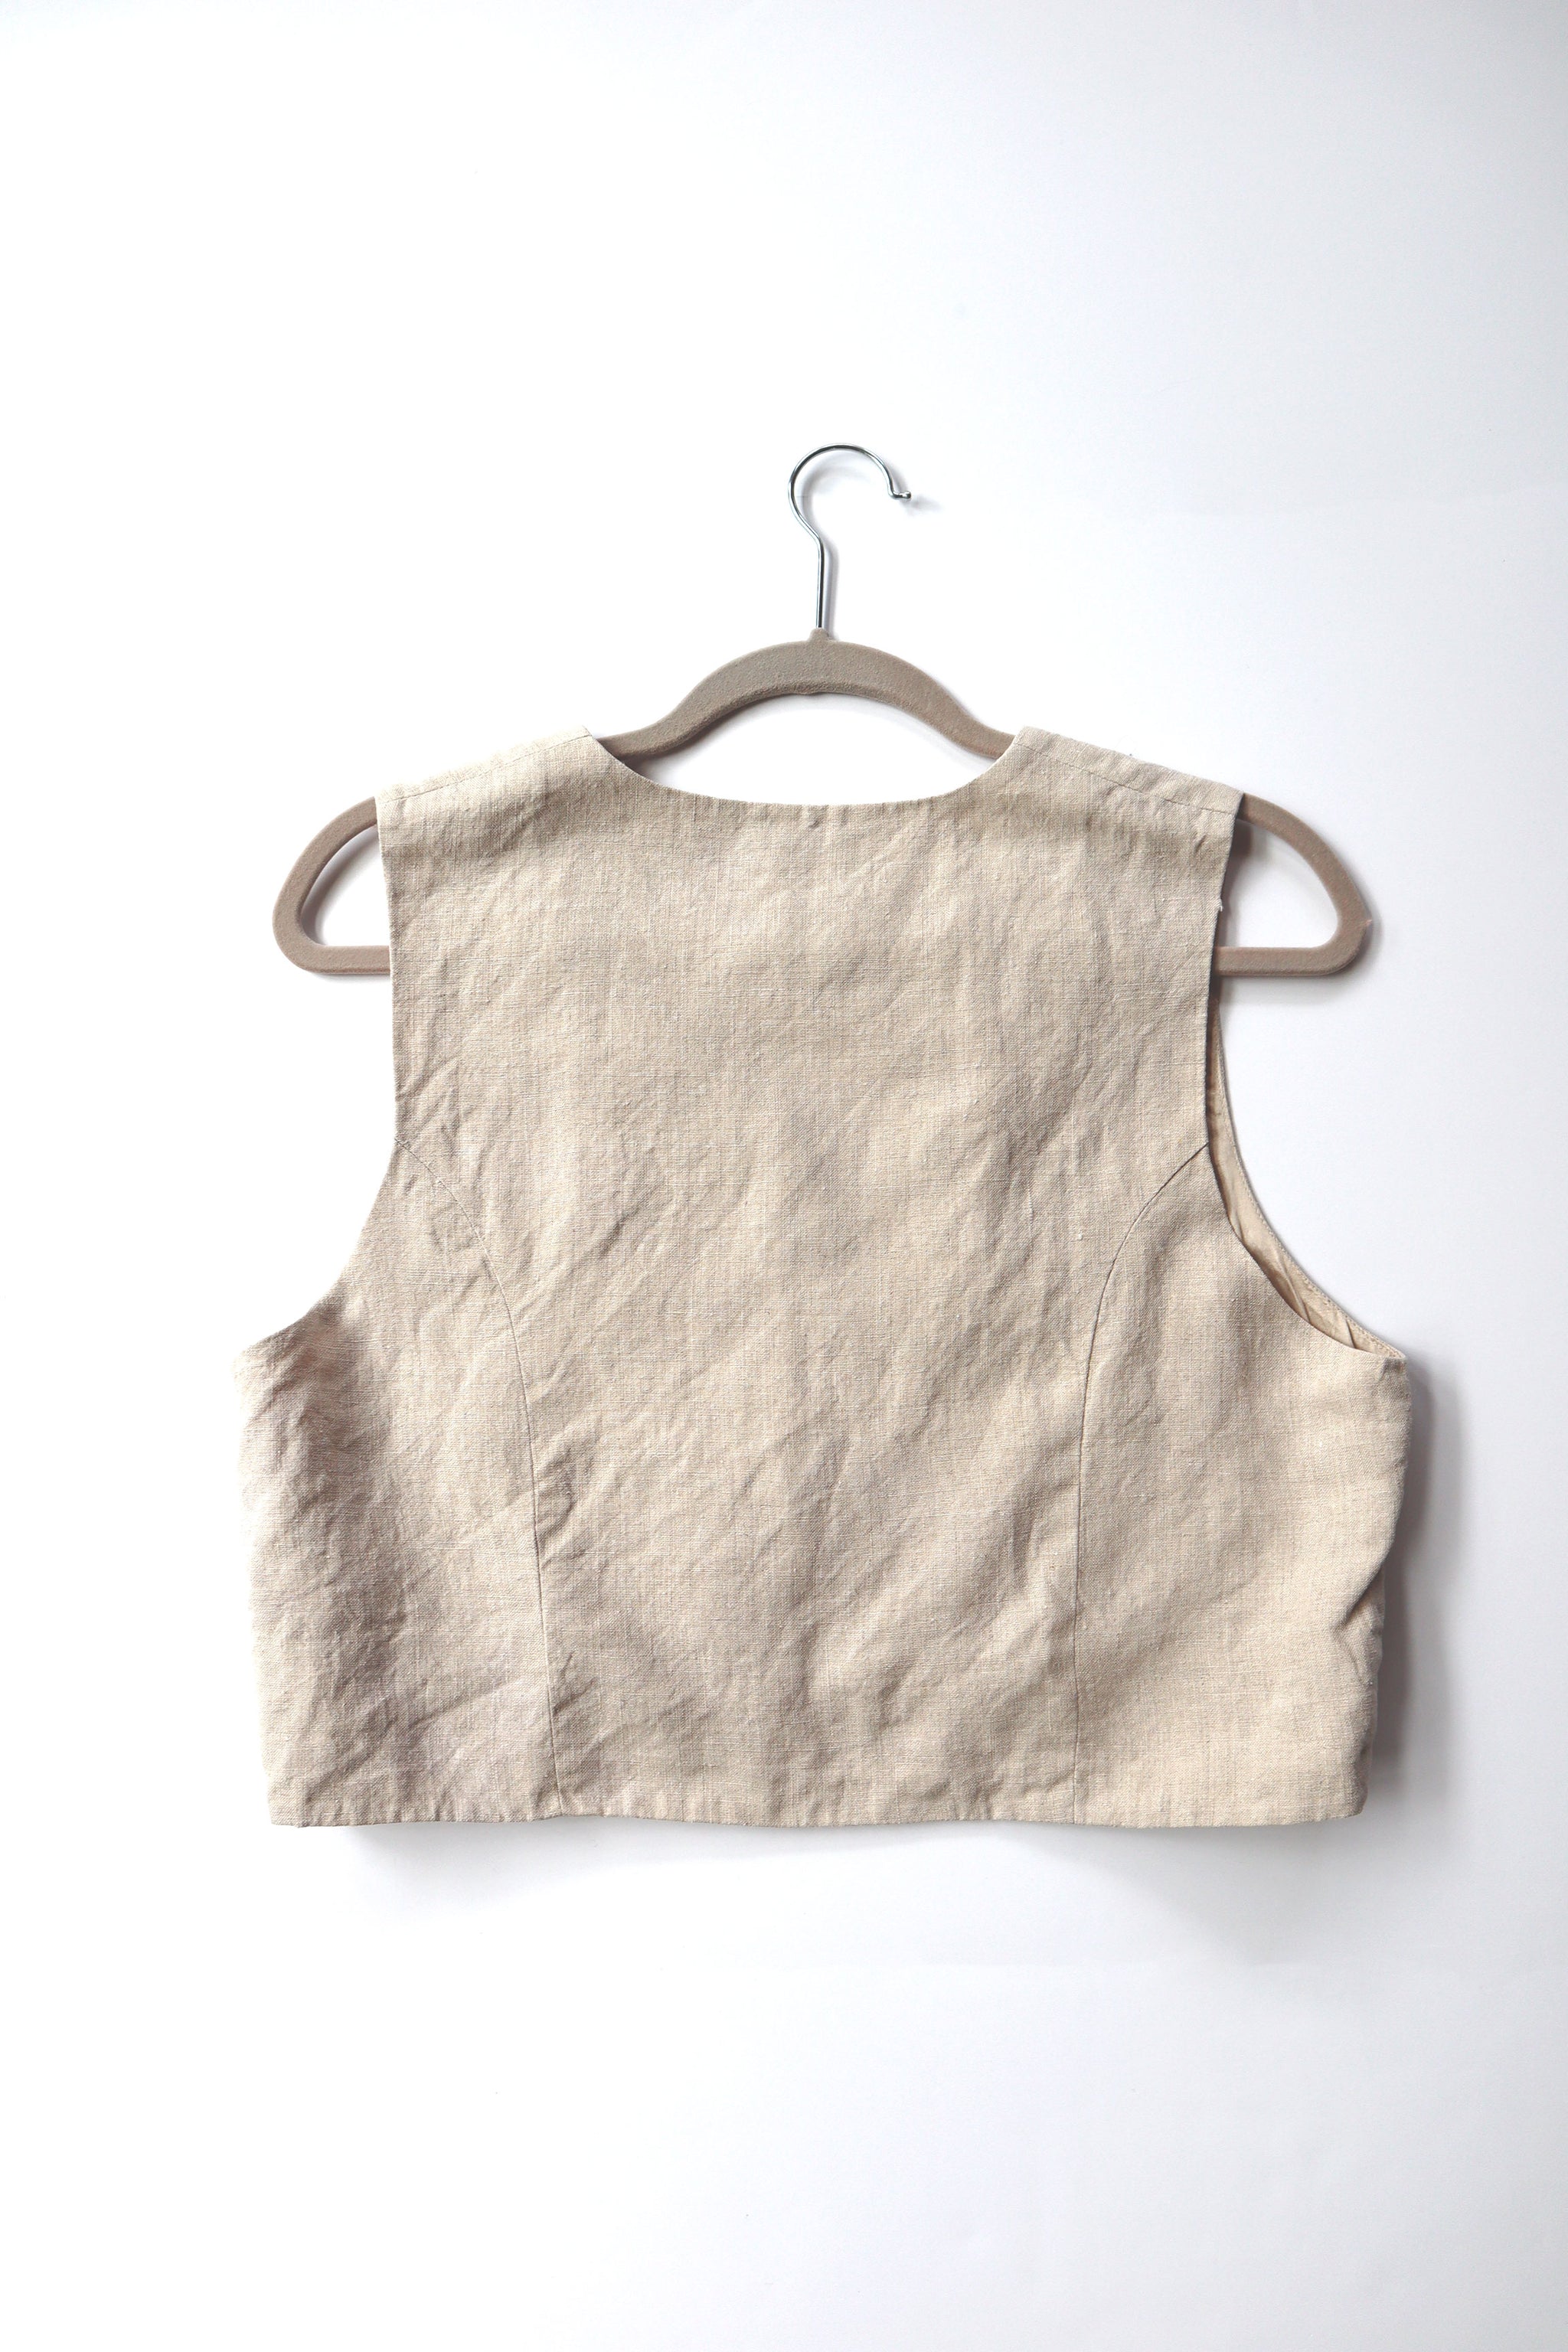 Cambridge Dry Goods Co. Linen Beaded Bolero Vest